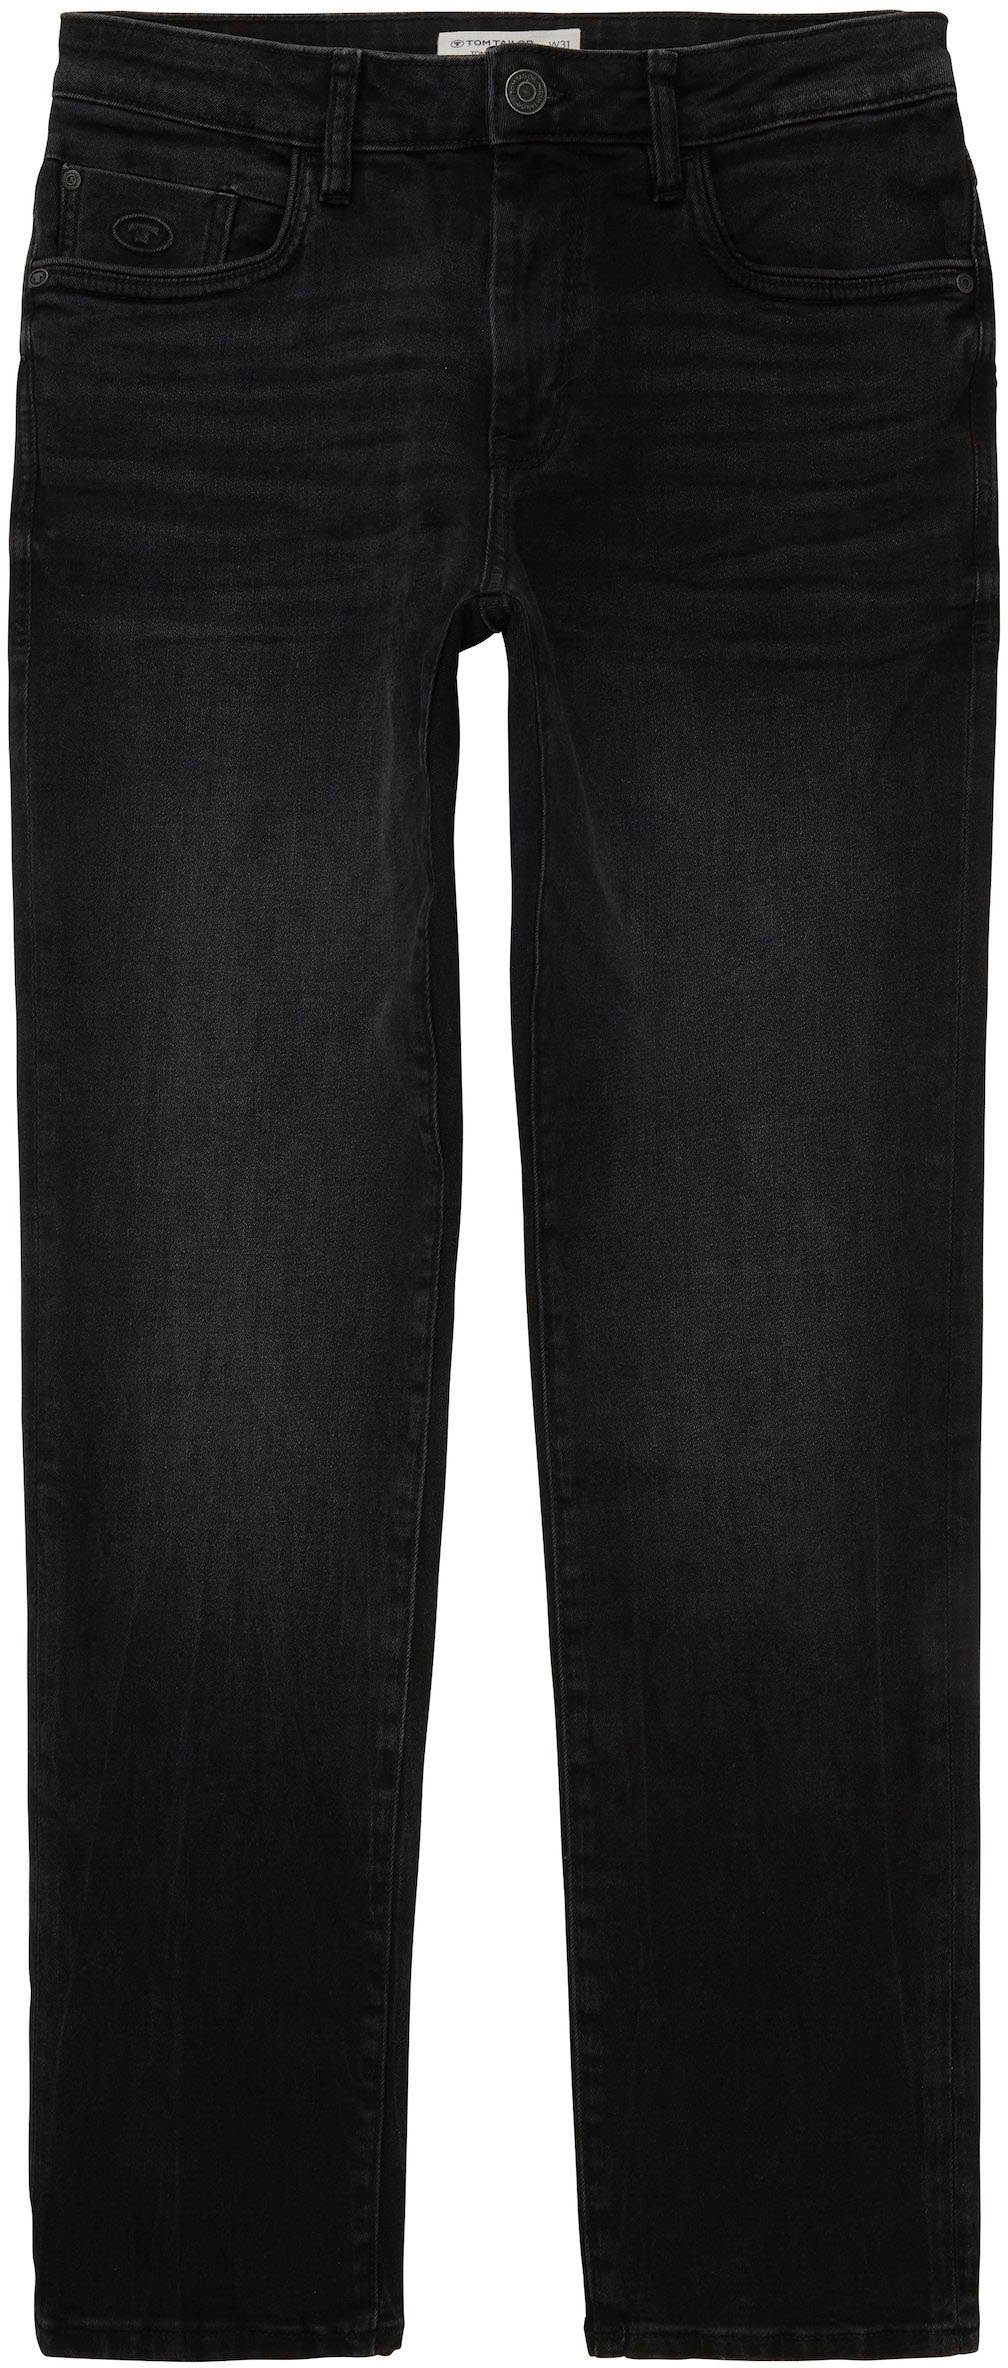 TOM TAILOR 5-Pocket-Jeans Josh mit used Reißverschluss dark